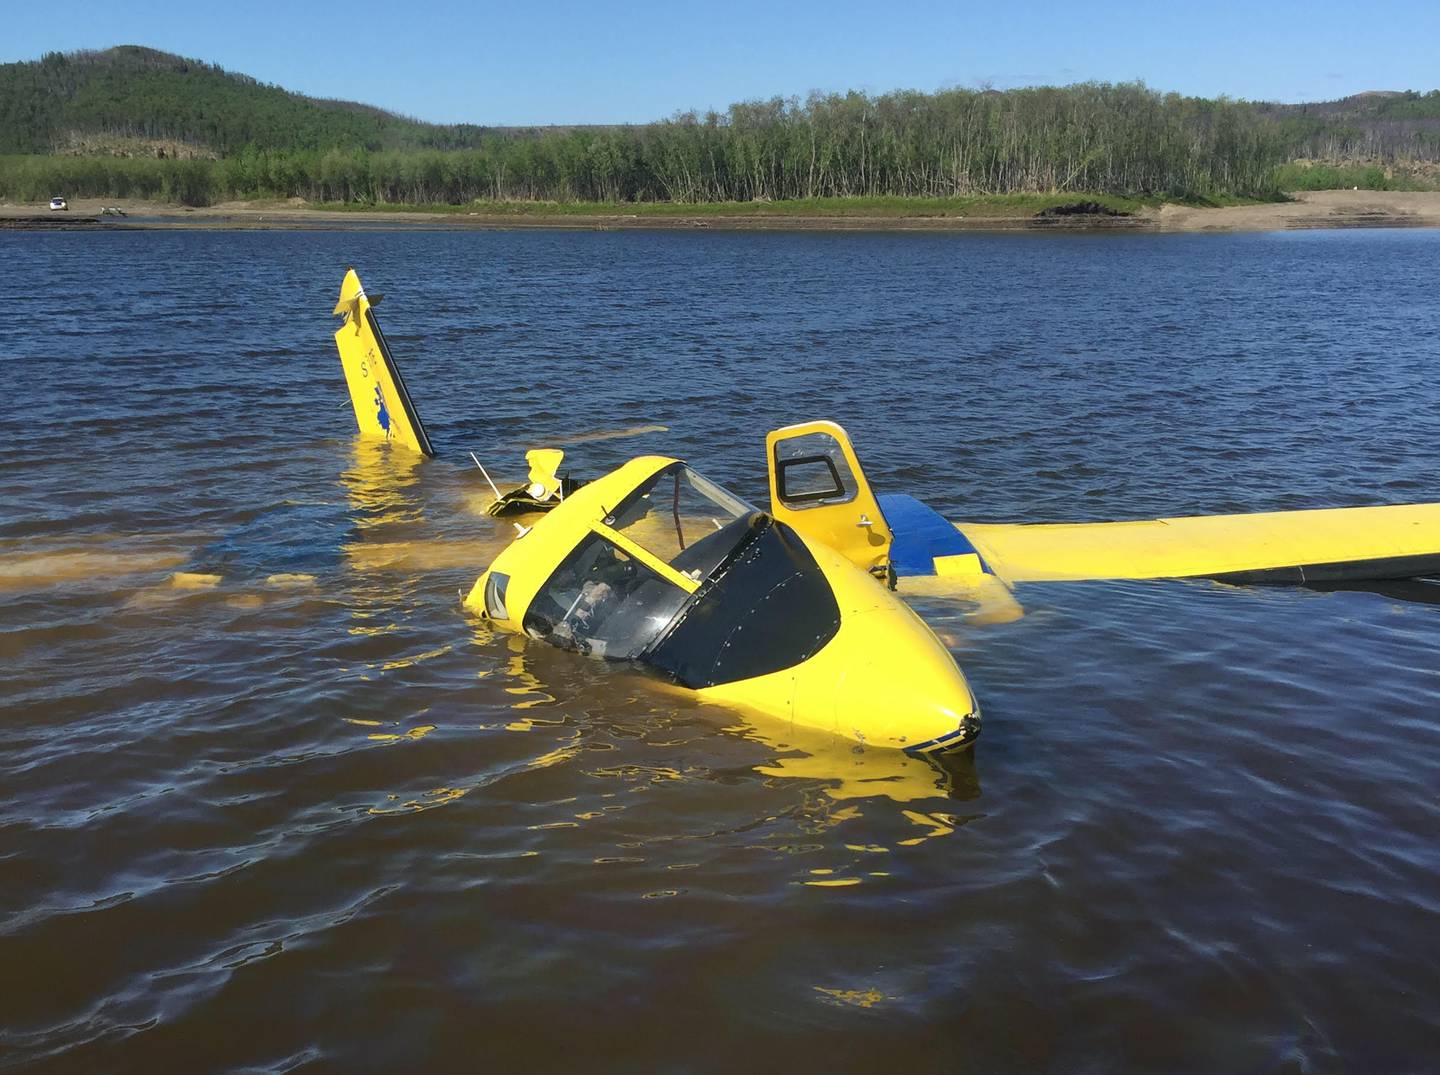 Aniak forestry plane crash